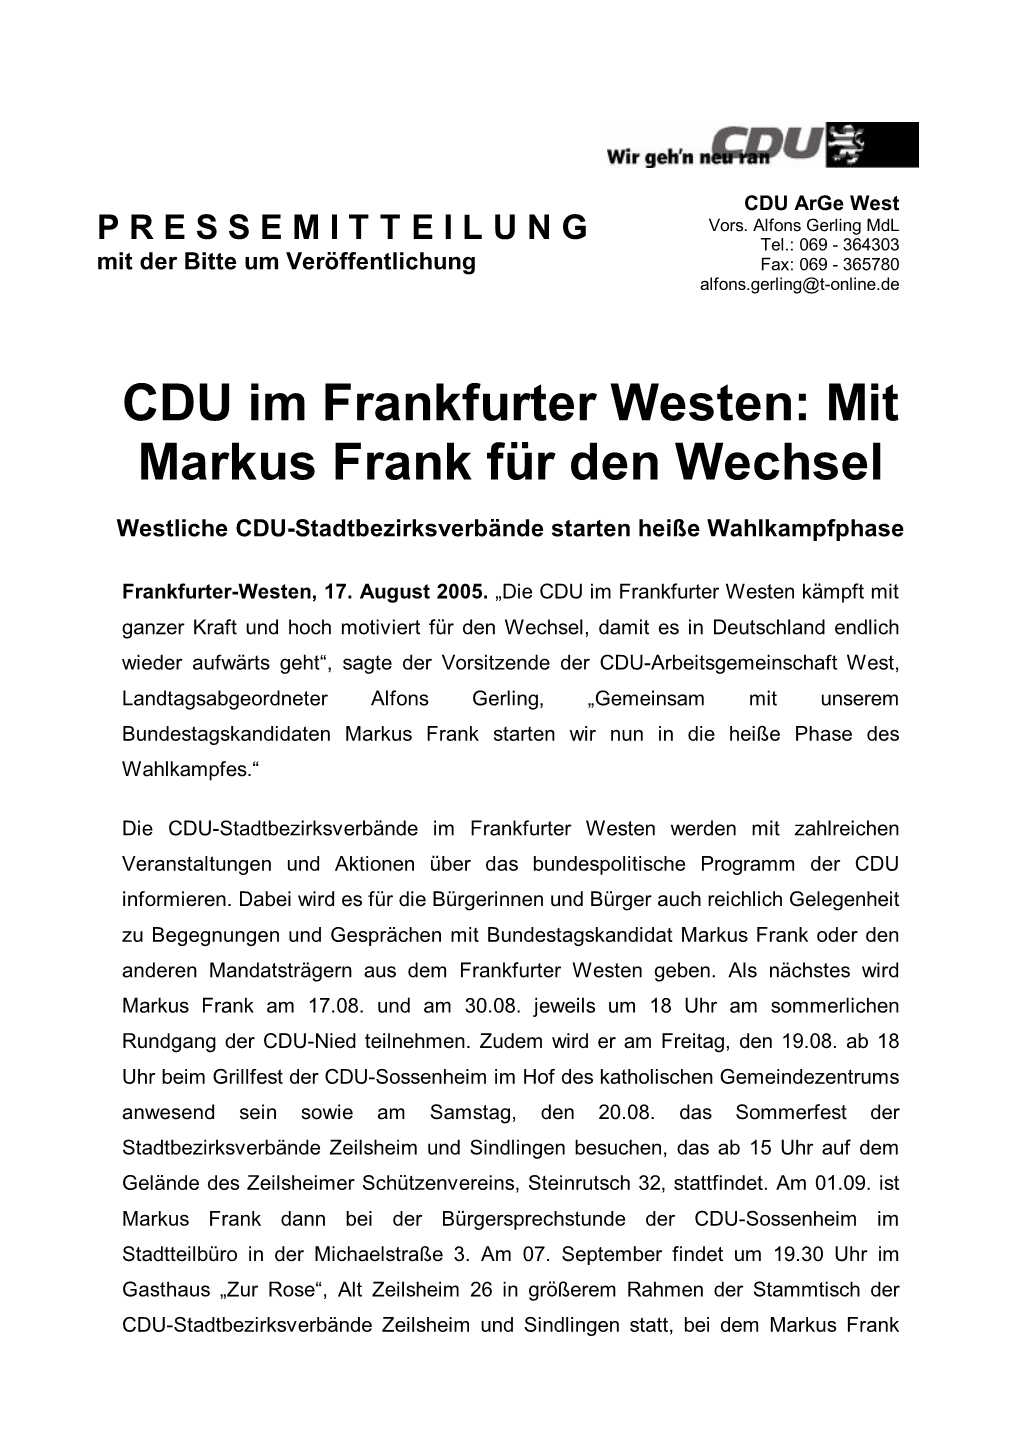 CDU Im Frankfurter Westen: Mit Markus Frank Für Den Wechsel